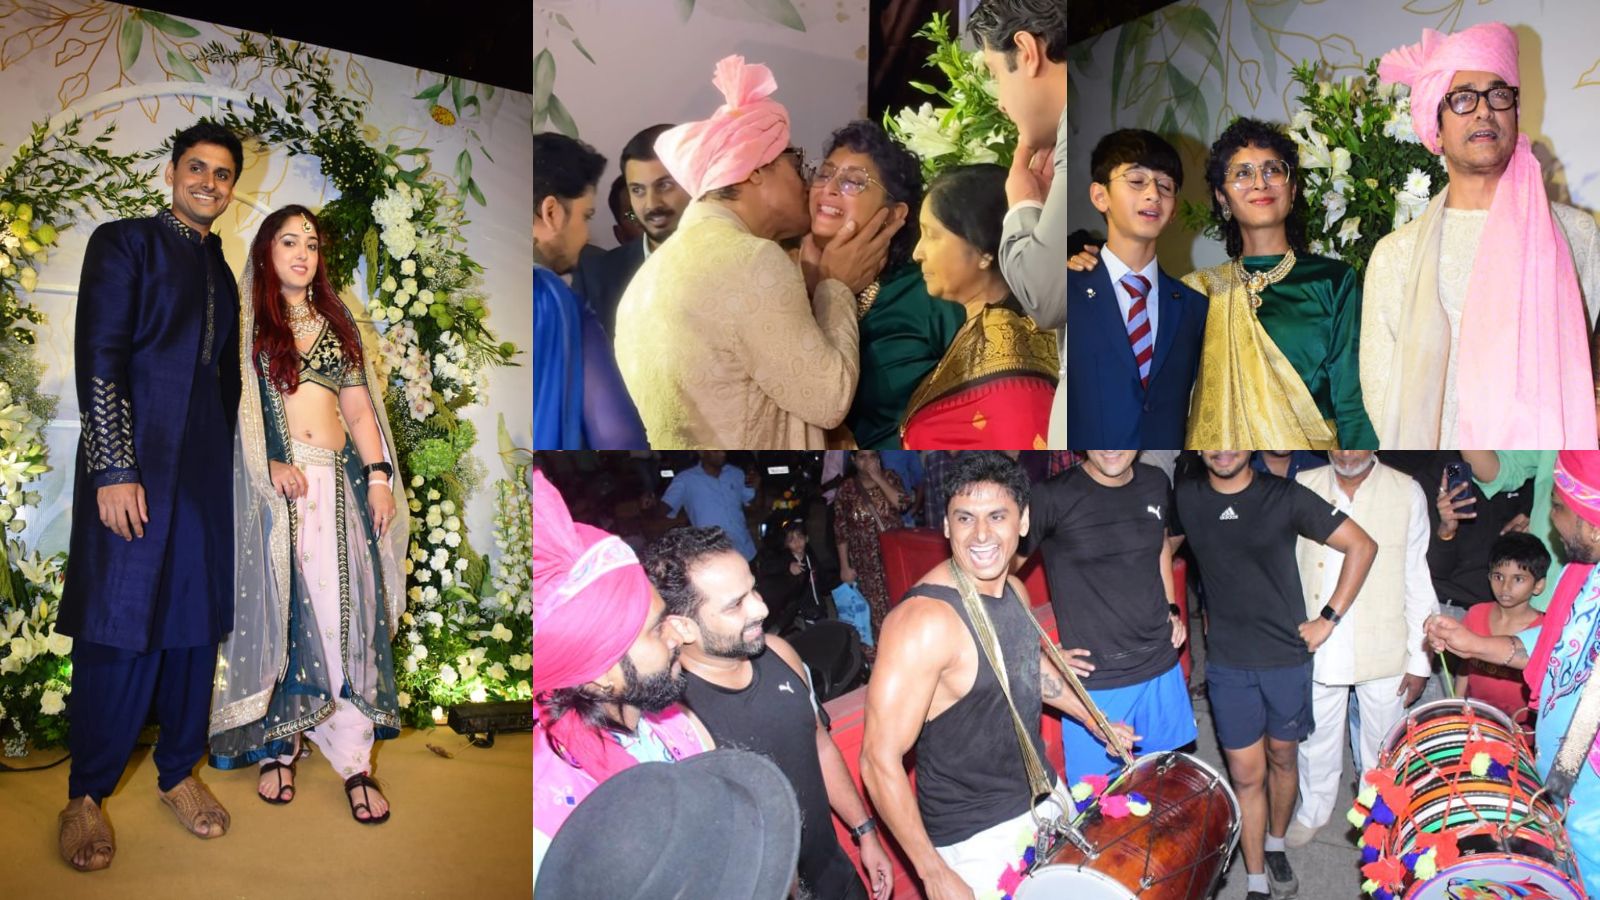 Aamir Khan Xnx Videos - Aamir Khan plants a sweet kiss on ex-wife Kiran Rao's cheek at Ira Khan-Nupur  Shikhare's wedding, watch inside videos | Bollywood News - The Indian  Express